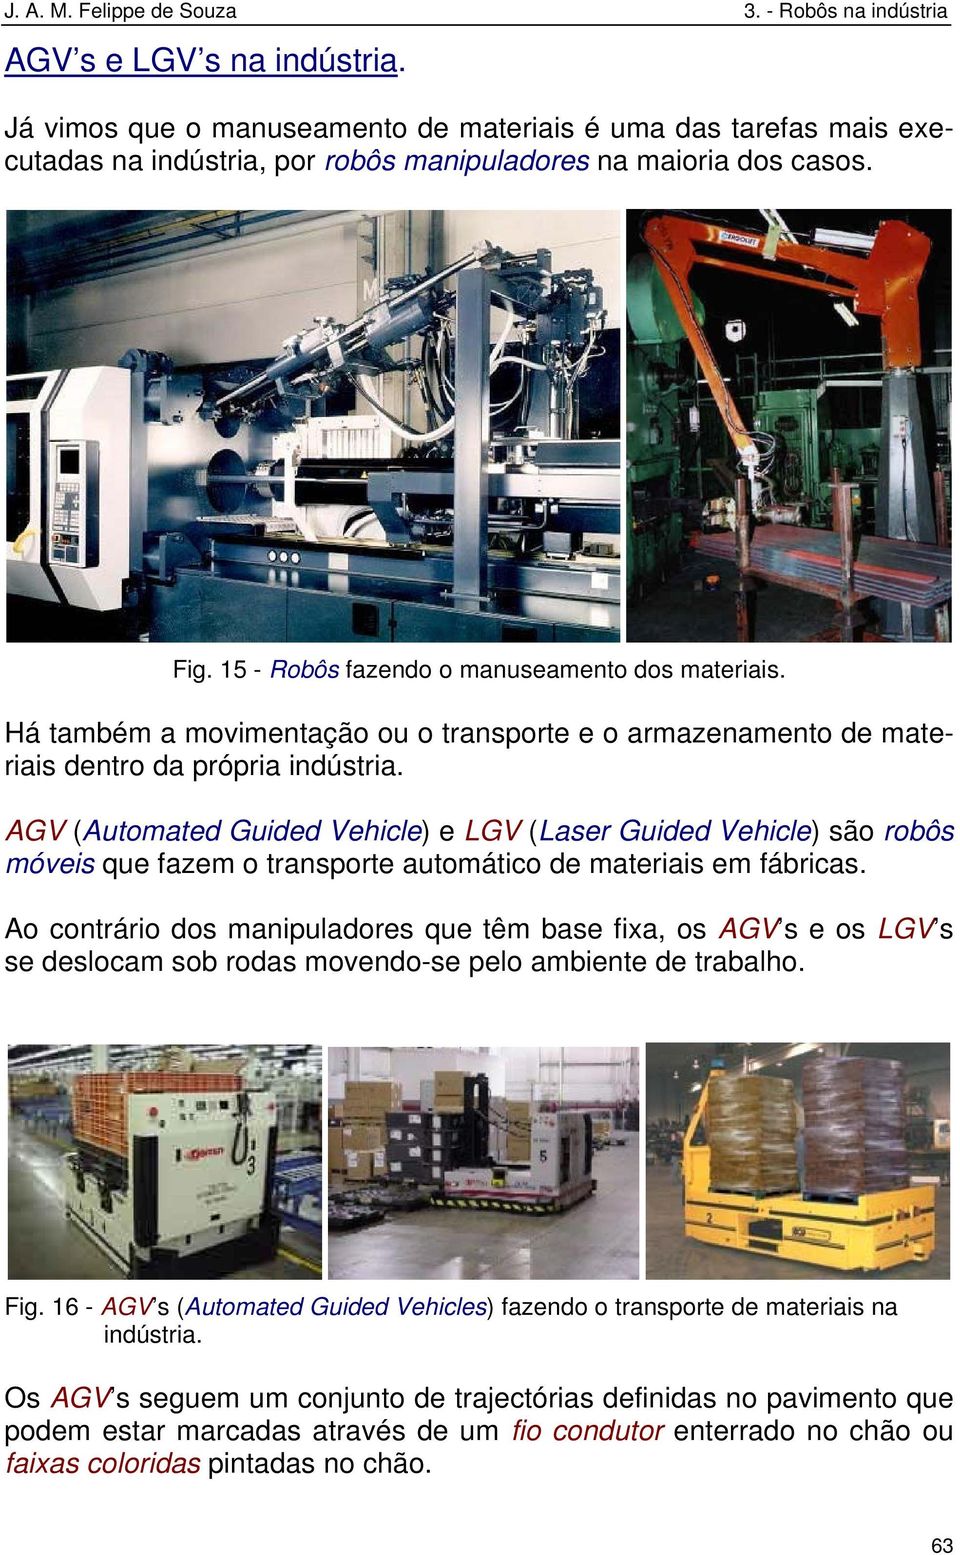 AGV (Automated Guided Vehicle) e LGV (Laser Guided Vehicle) são robôs móveis que fazem o transporte automático de materiais em fábricas.